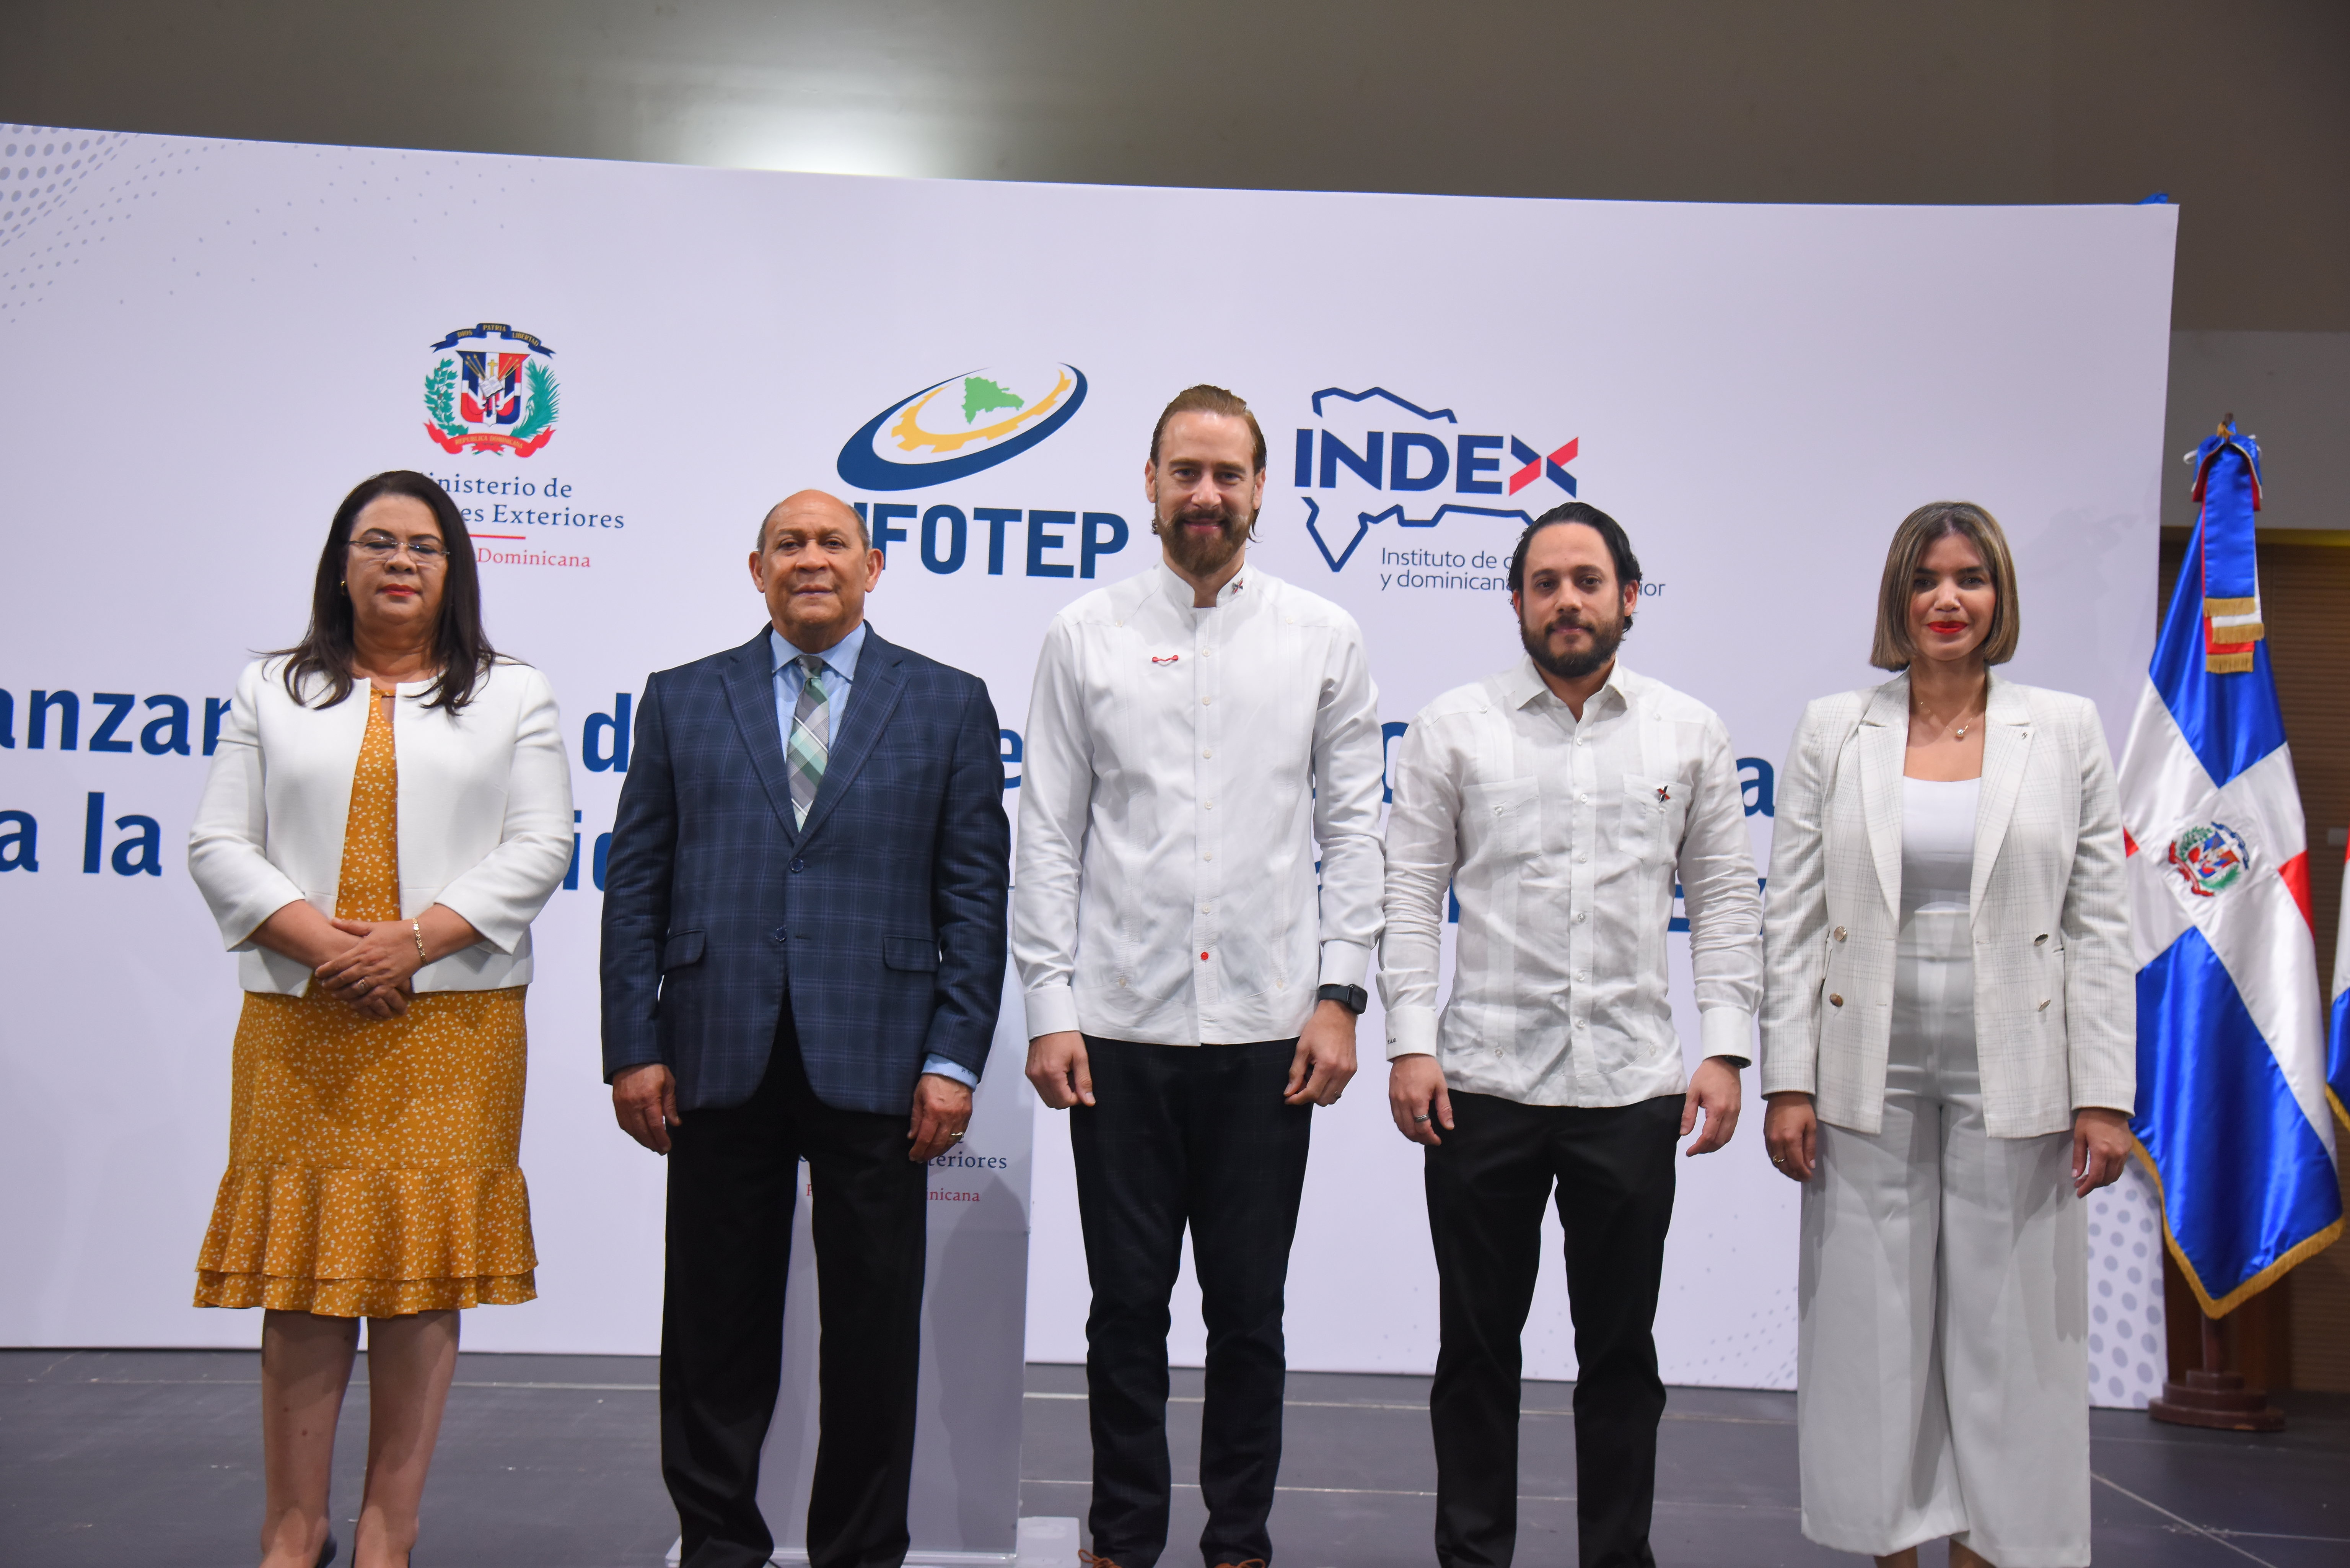 INFOTEP e INDEX ampliam projeto de formação técnica para dominicanos no exterior